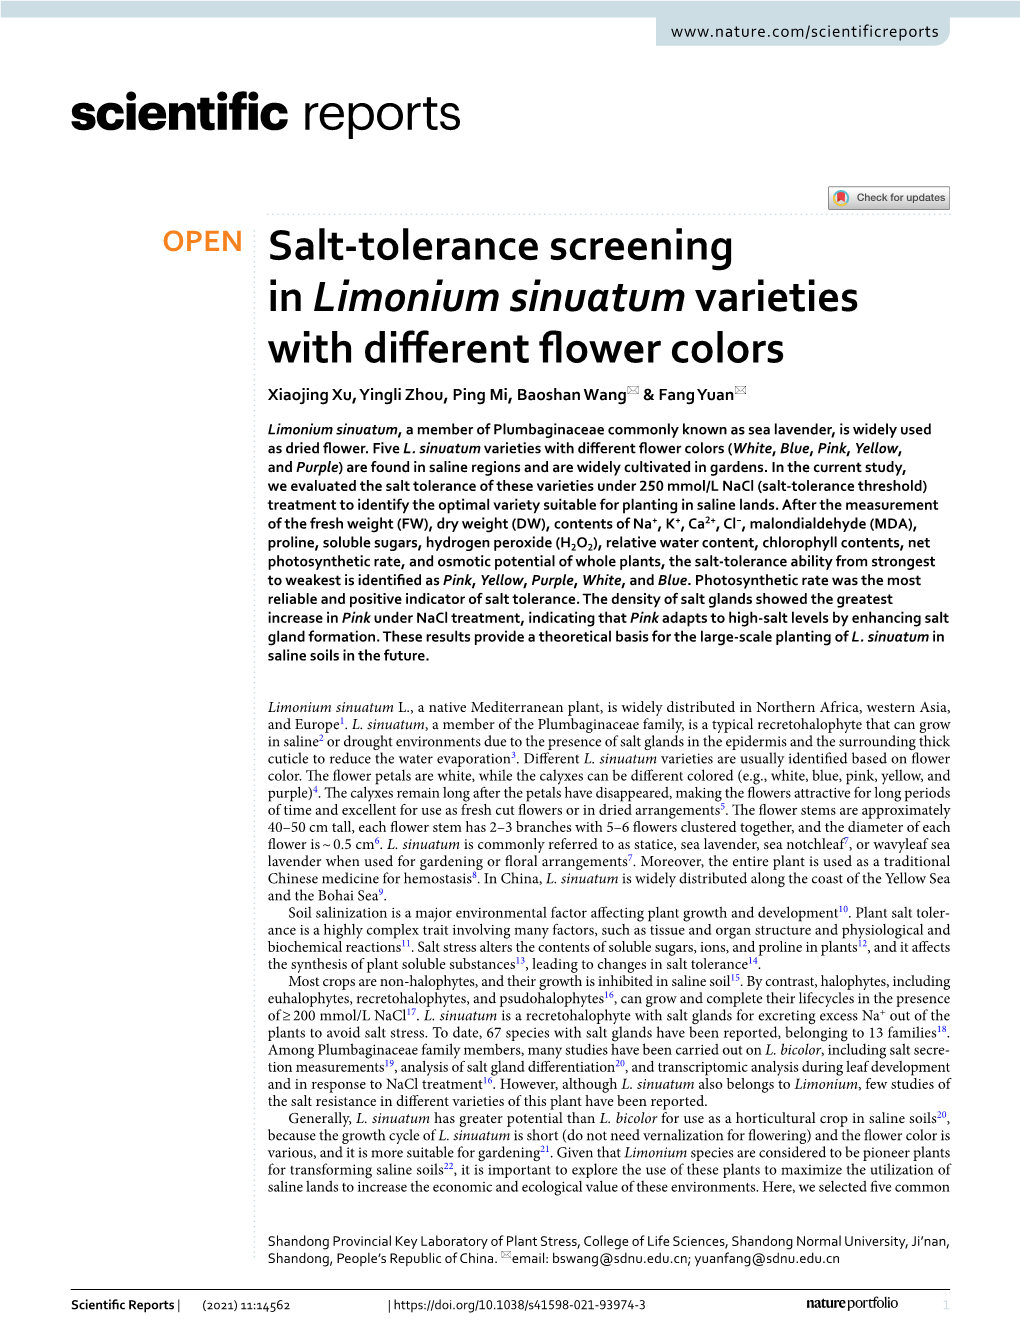 Salt-Tolerance Screening in Limonium Sinuatum Varieties with Different